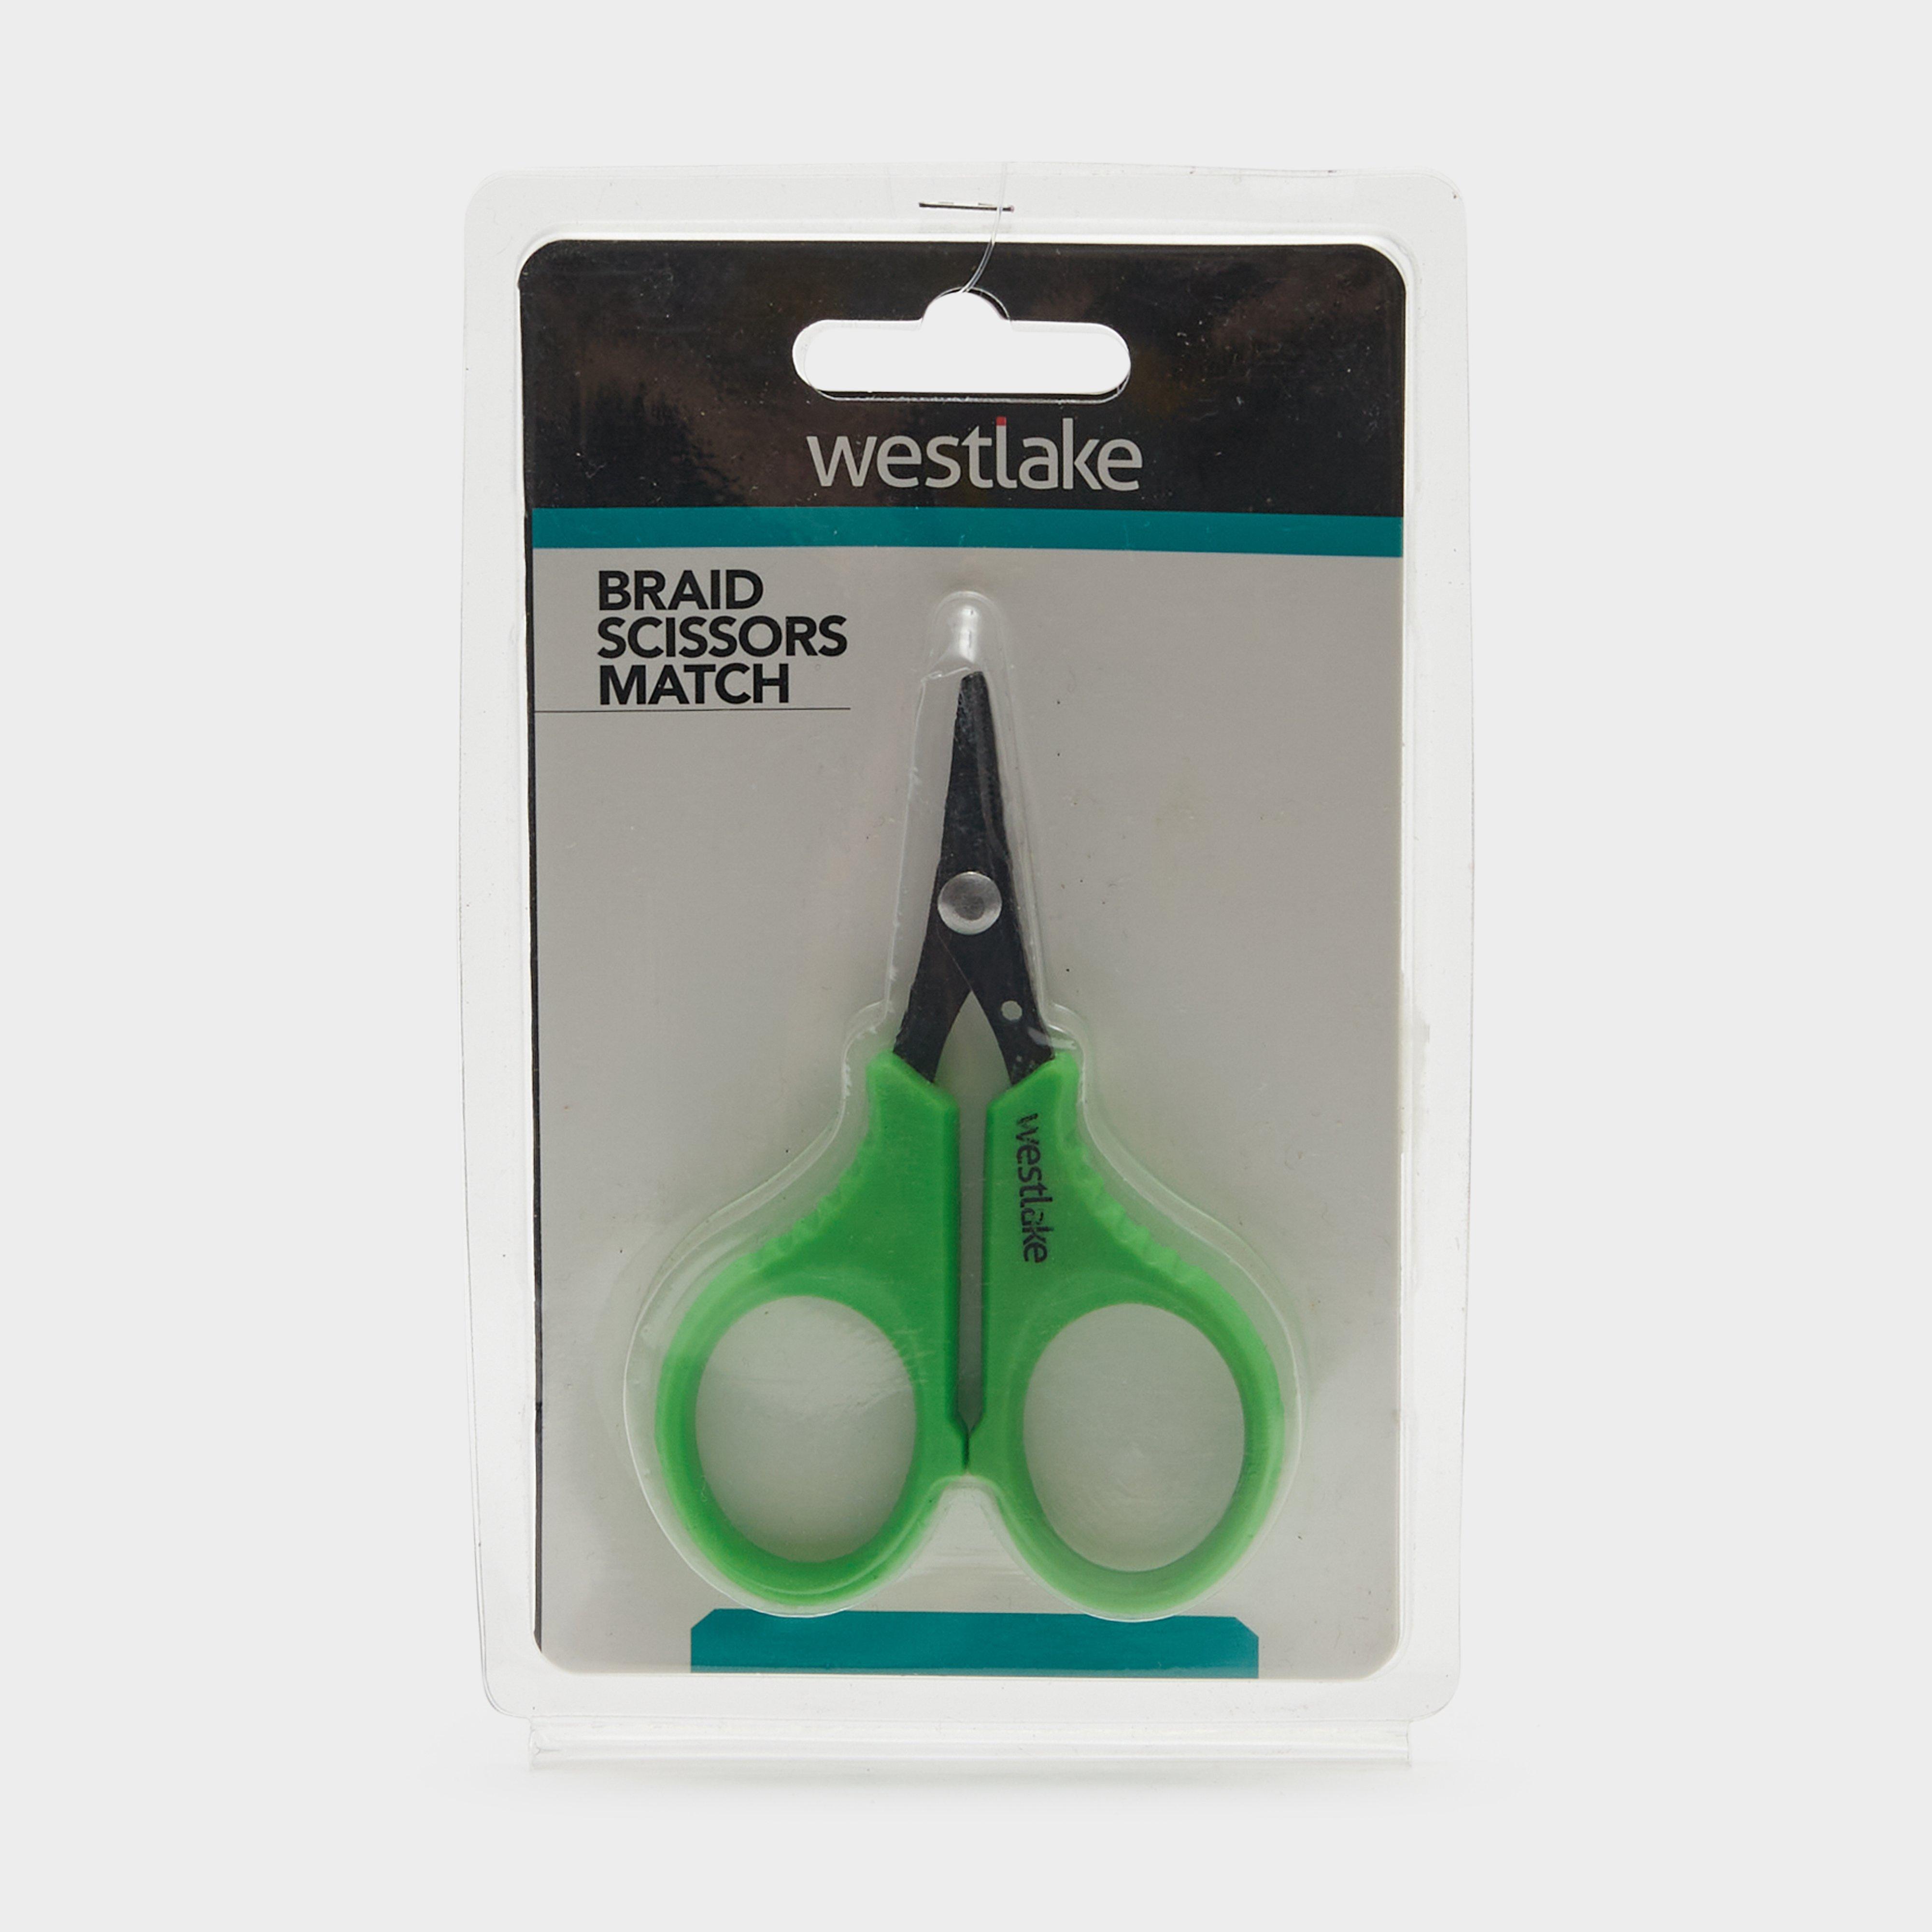 Westlake Braid Scissors Match - Green/match  Green/match